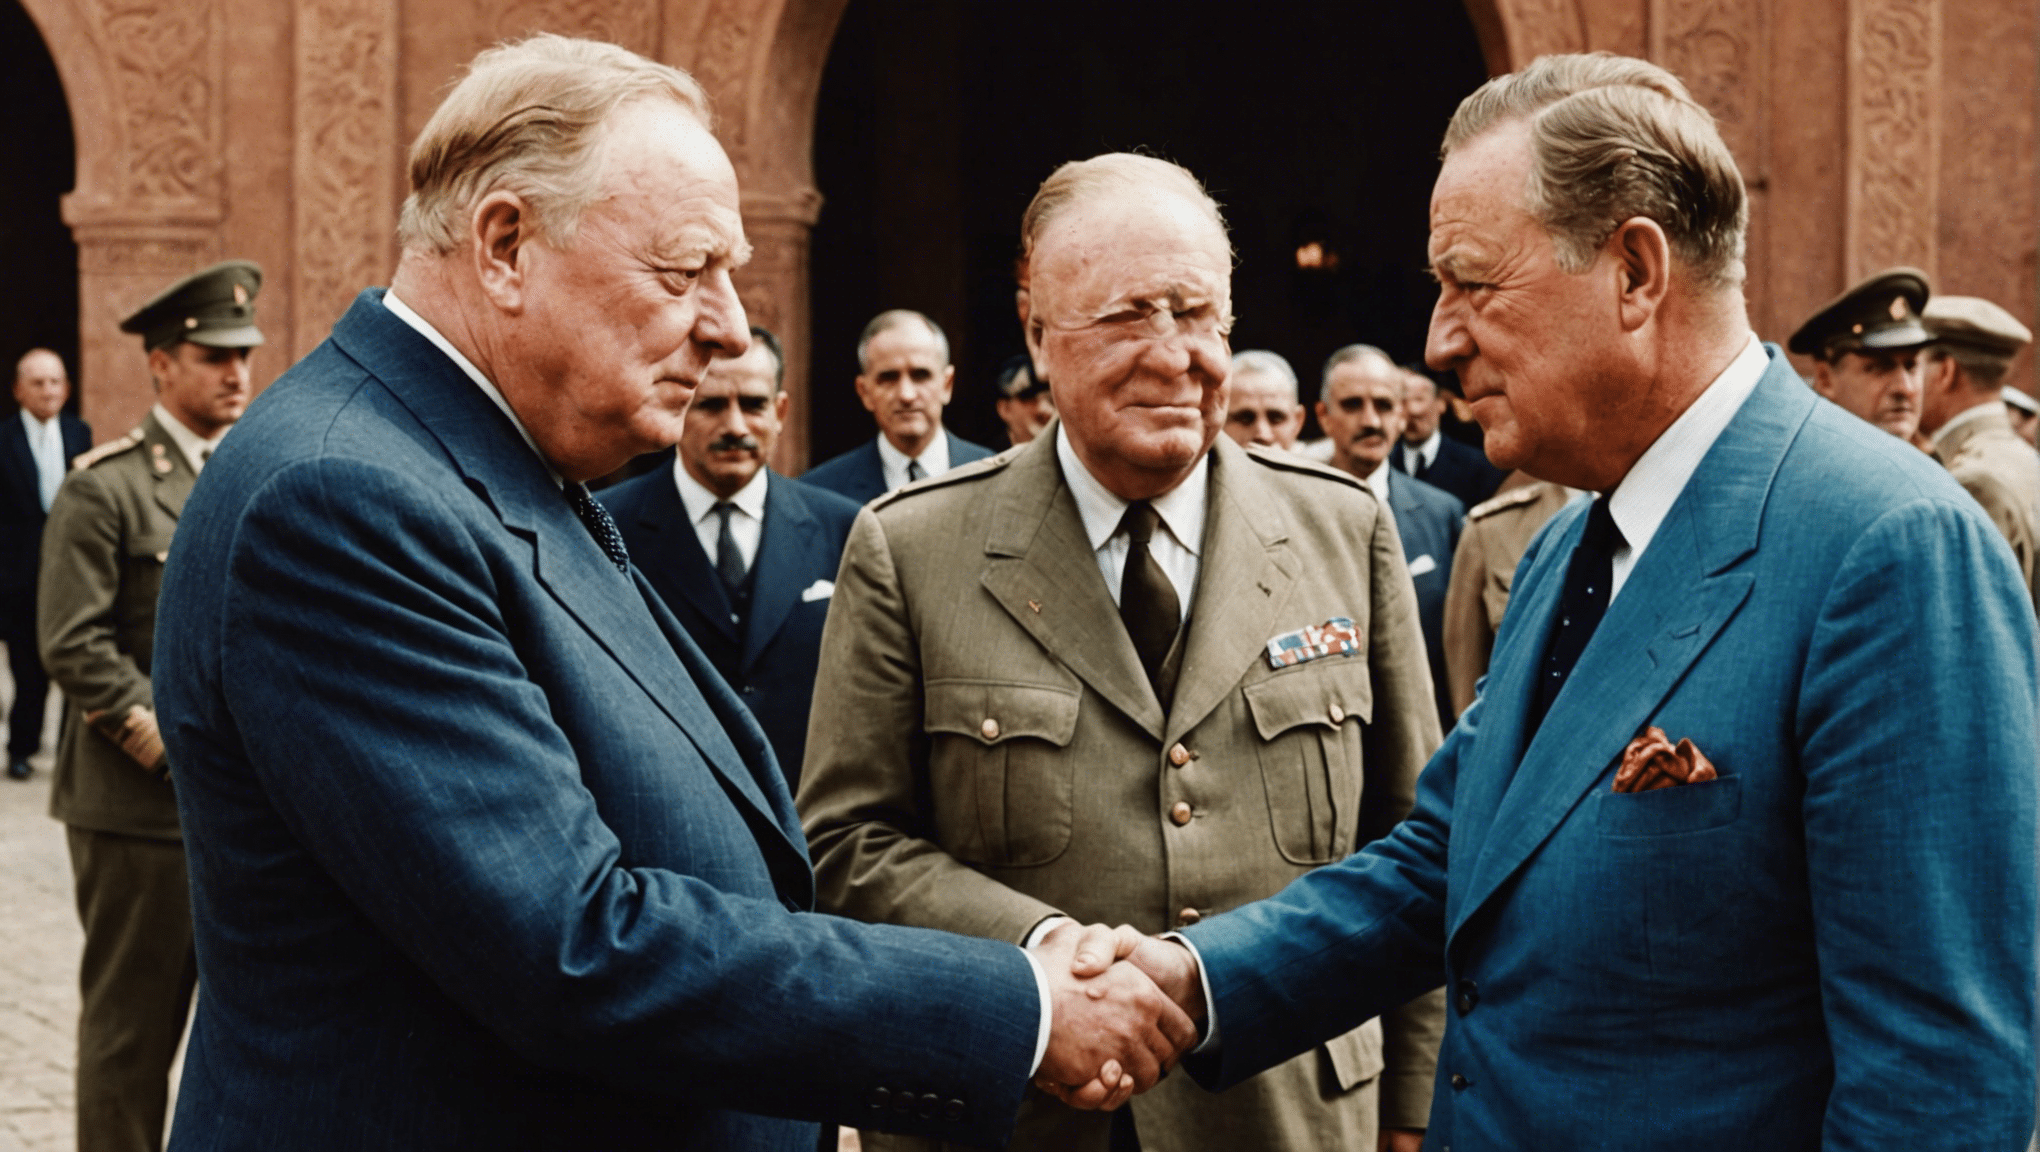 Churchill y Roosevelt se reunieron durante la Segunda Guerra Mundial en Marrakech, un momento icónico de la historia que marcó el curso de la guerra y del mundo. aprenda sobre este encuentro histórico y su significado.